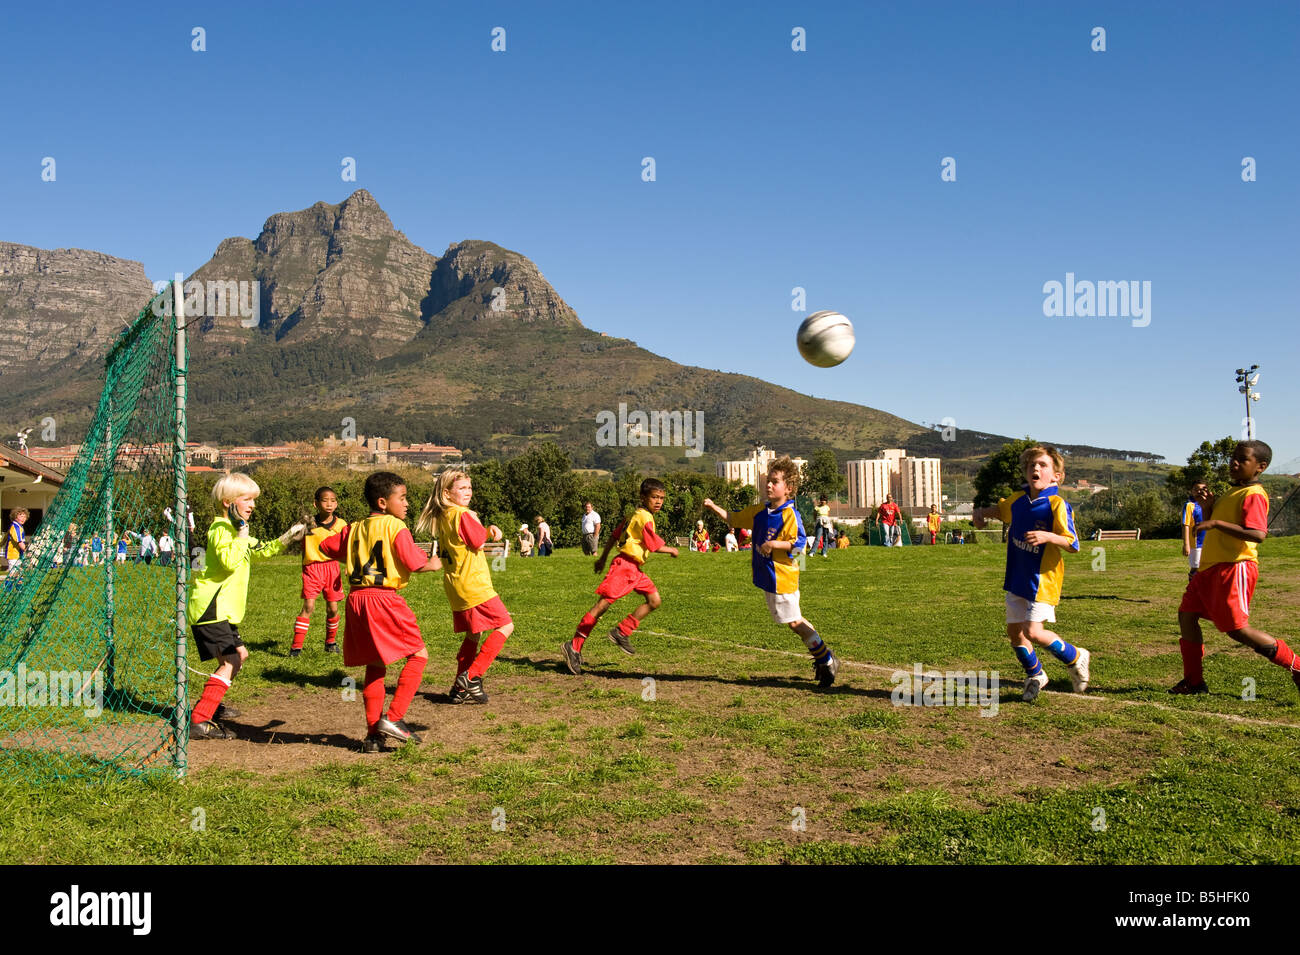 La juventud de un partido de fútbol en Ciudad del Cabo, Sudáfrica Foto de stock